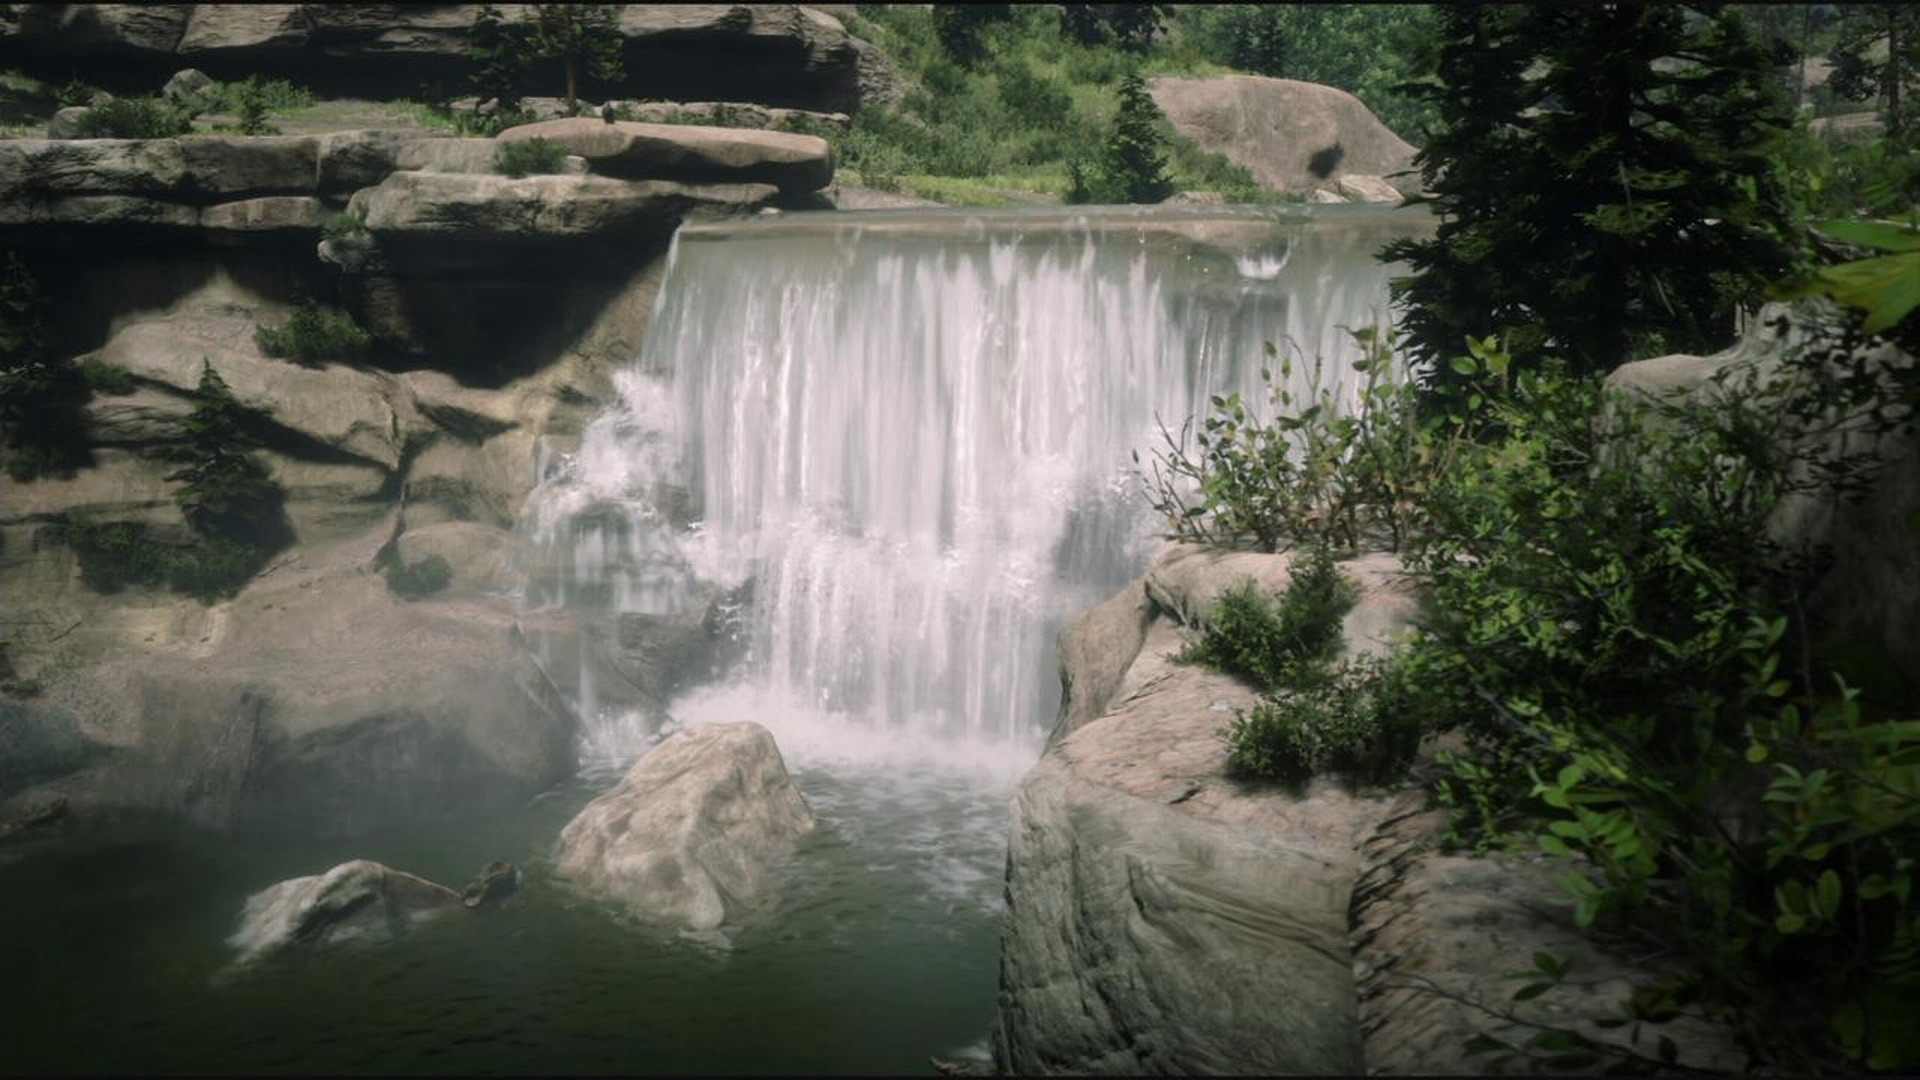 《荒野大镖客2》游戏截图欣赏 美丽逼真的风景让玩家沉醉